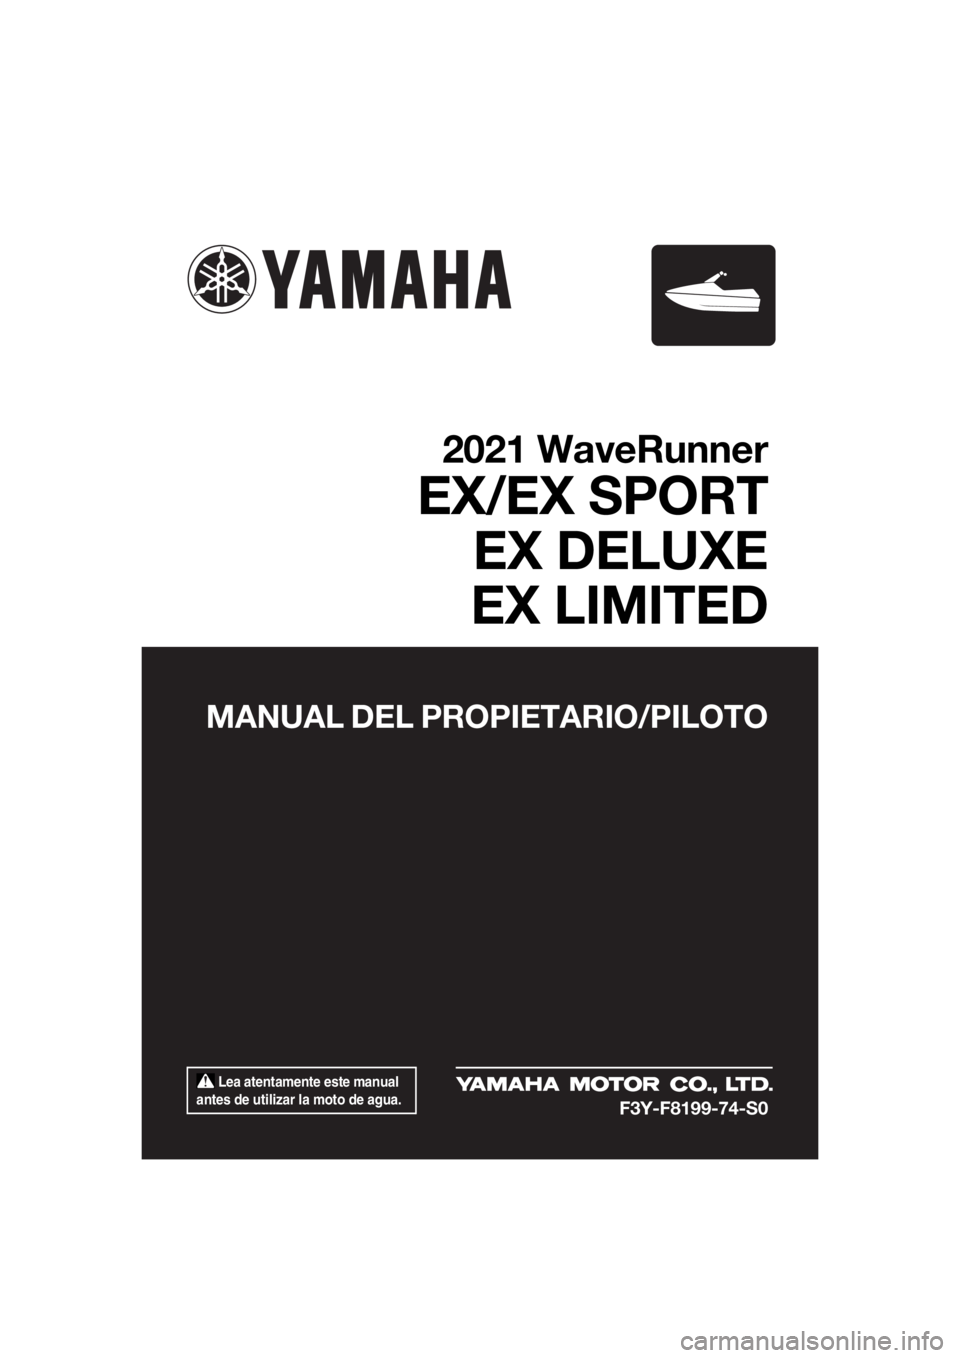 YAMAHA EX DELUXE 2021  Manuale de Empleo (in Spanish)  Lea atentamente este manual 
antes de utilizar la moto de agua.
MANUAL DEL PROPIETARIO/PILOTO
2021 WaveRunner
EX/EX SPORT EX DELUXE
EX LIMITED
F3Y-F8199-74-S0
UF3Y74S0.book  Page 1  Tuesday, June 23,